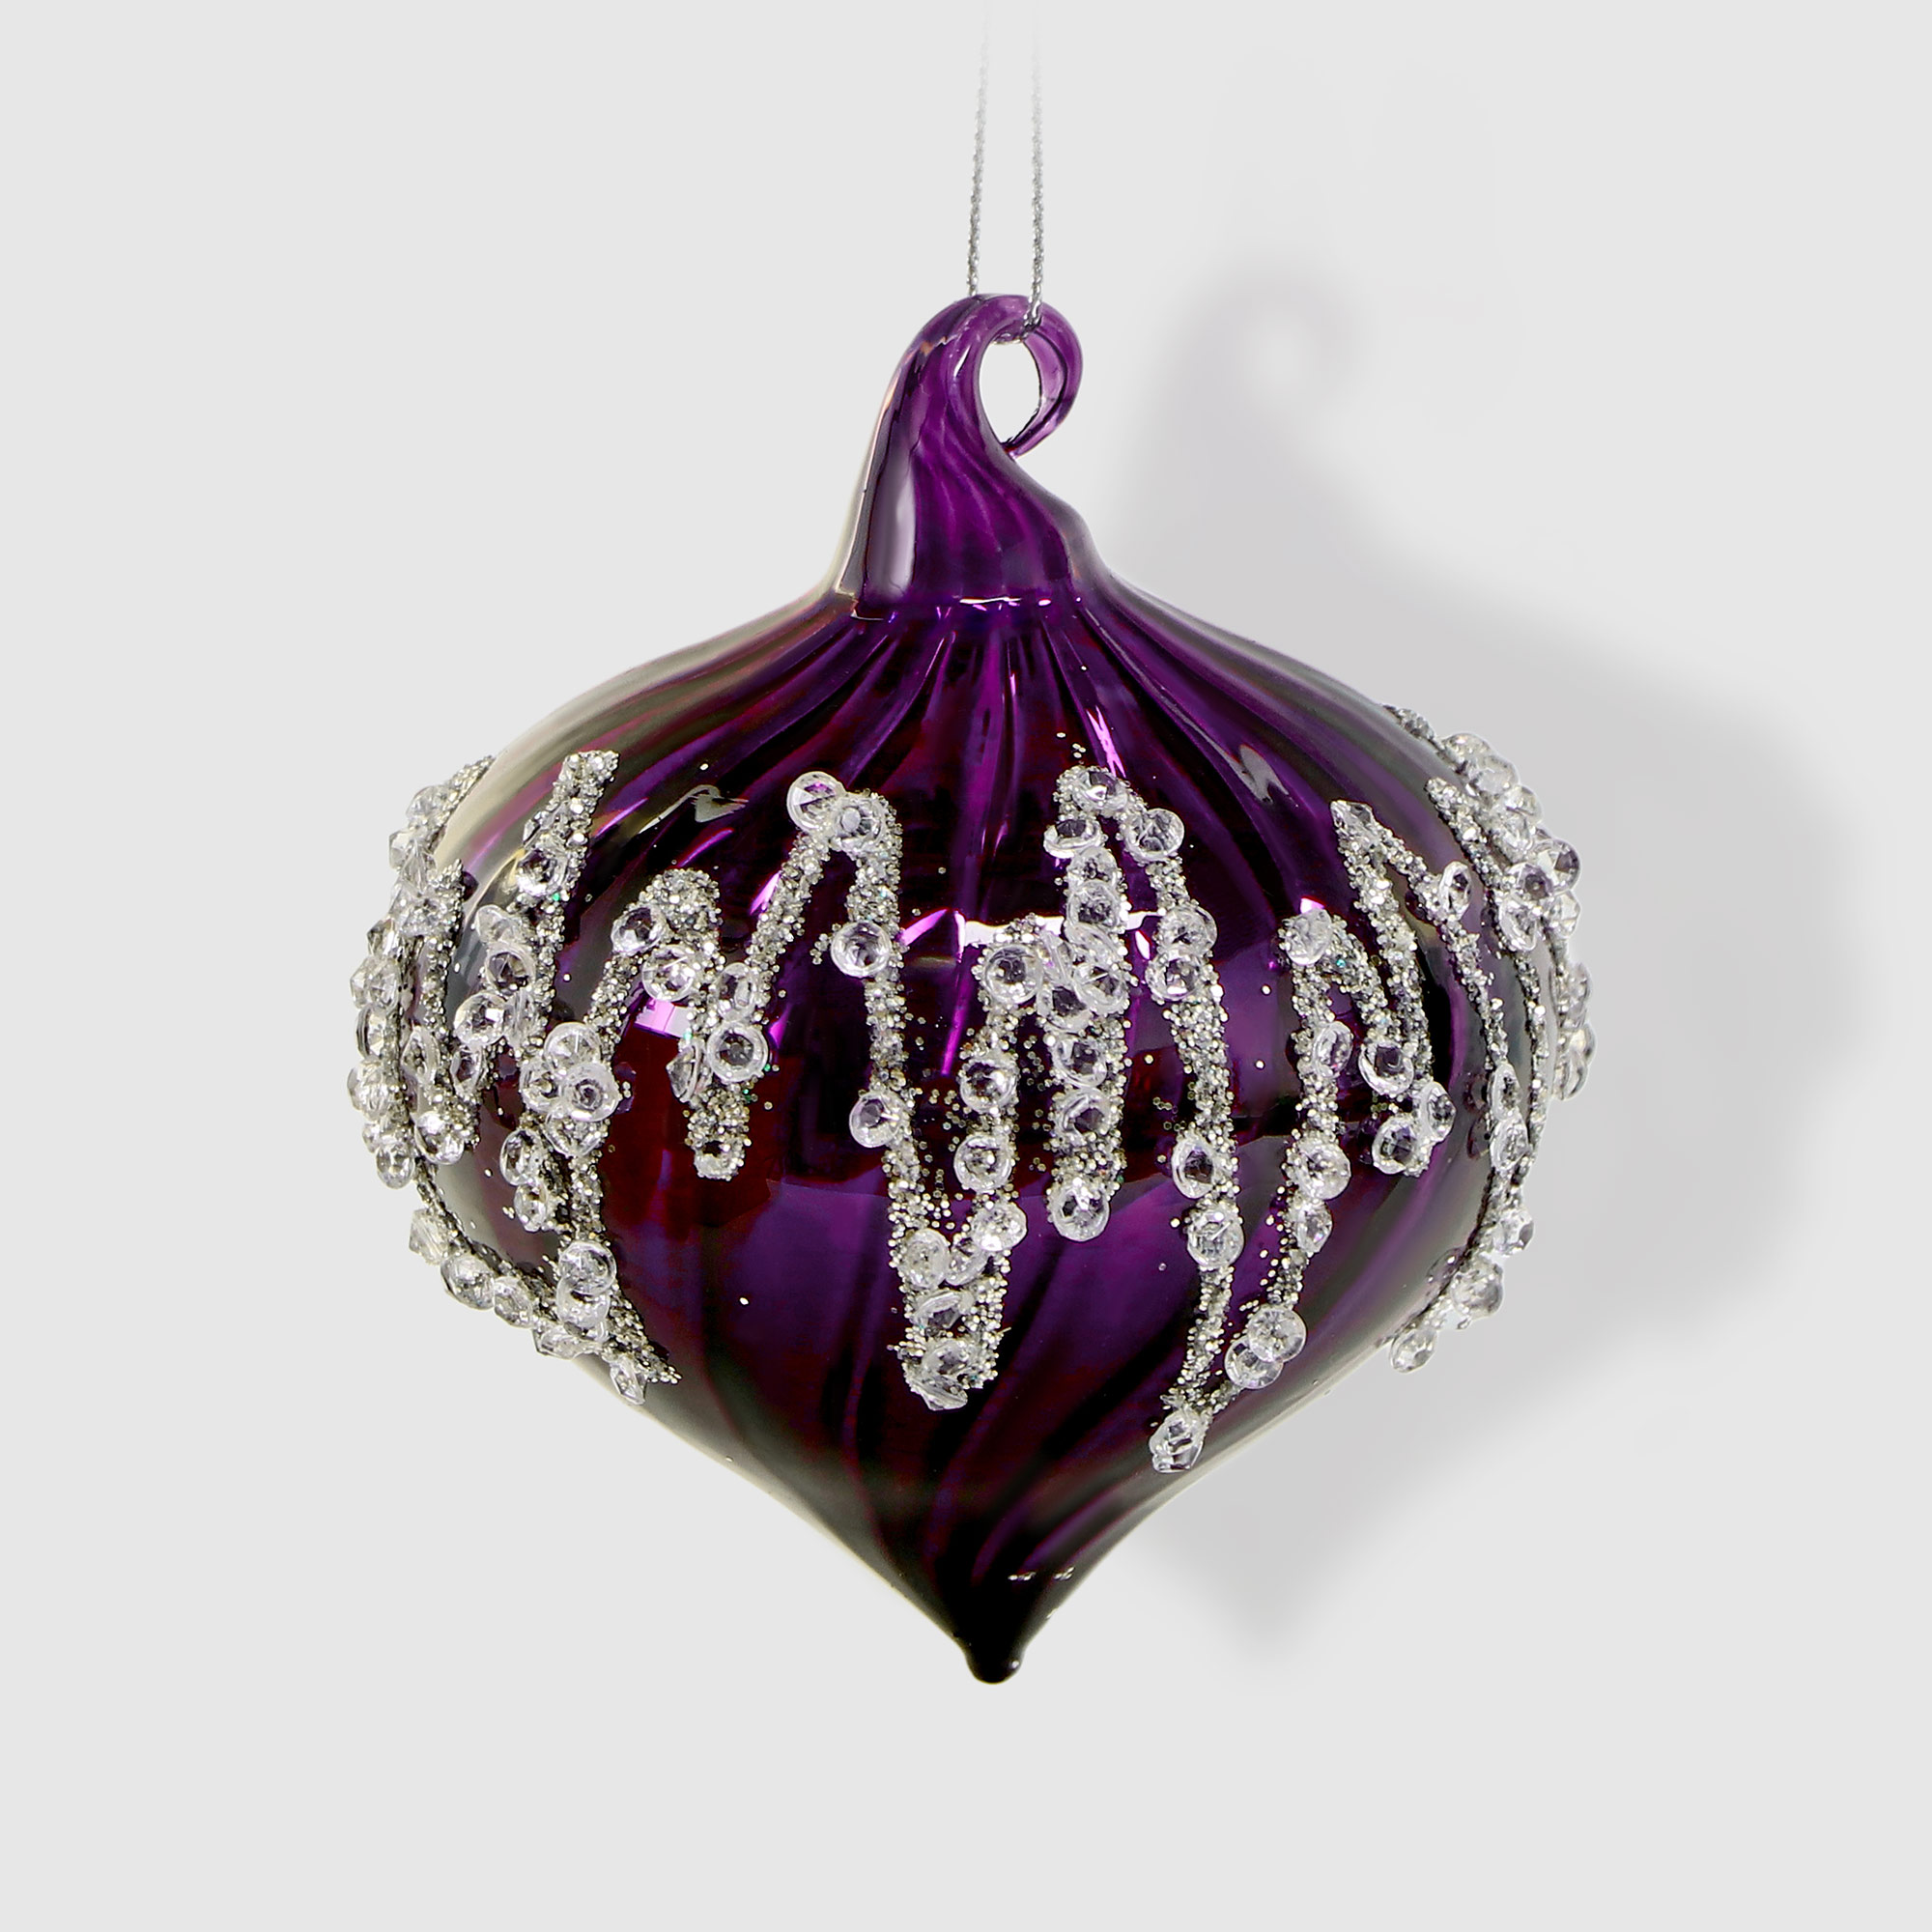 Шар-луковица Yancheng Shiny стеклянный фиолетовый 8 см, цвет сиреневый - фото 1